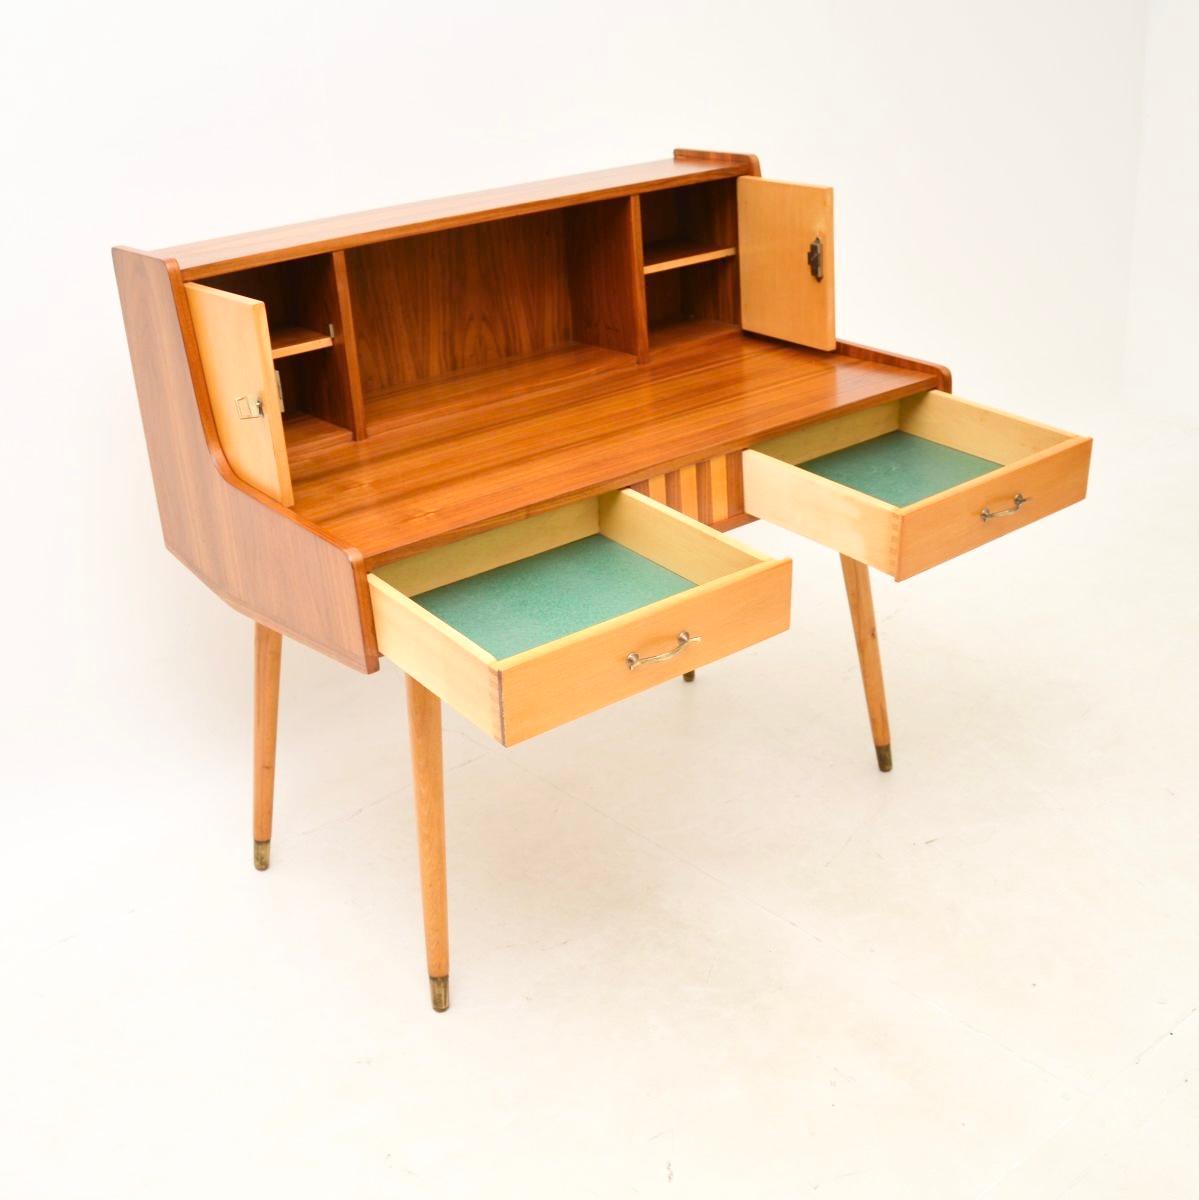 Ein hervorragender italienischer Schreibtisch aus Nussbaum und satiniertem Holz aus den 1950-60er Jahren.

Er ist wunderschön gestaltet und von hervorragender Qualität. Er steht auf wunderschönen, konischen Beinen mit Messingfußkappen. Es gibt viel